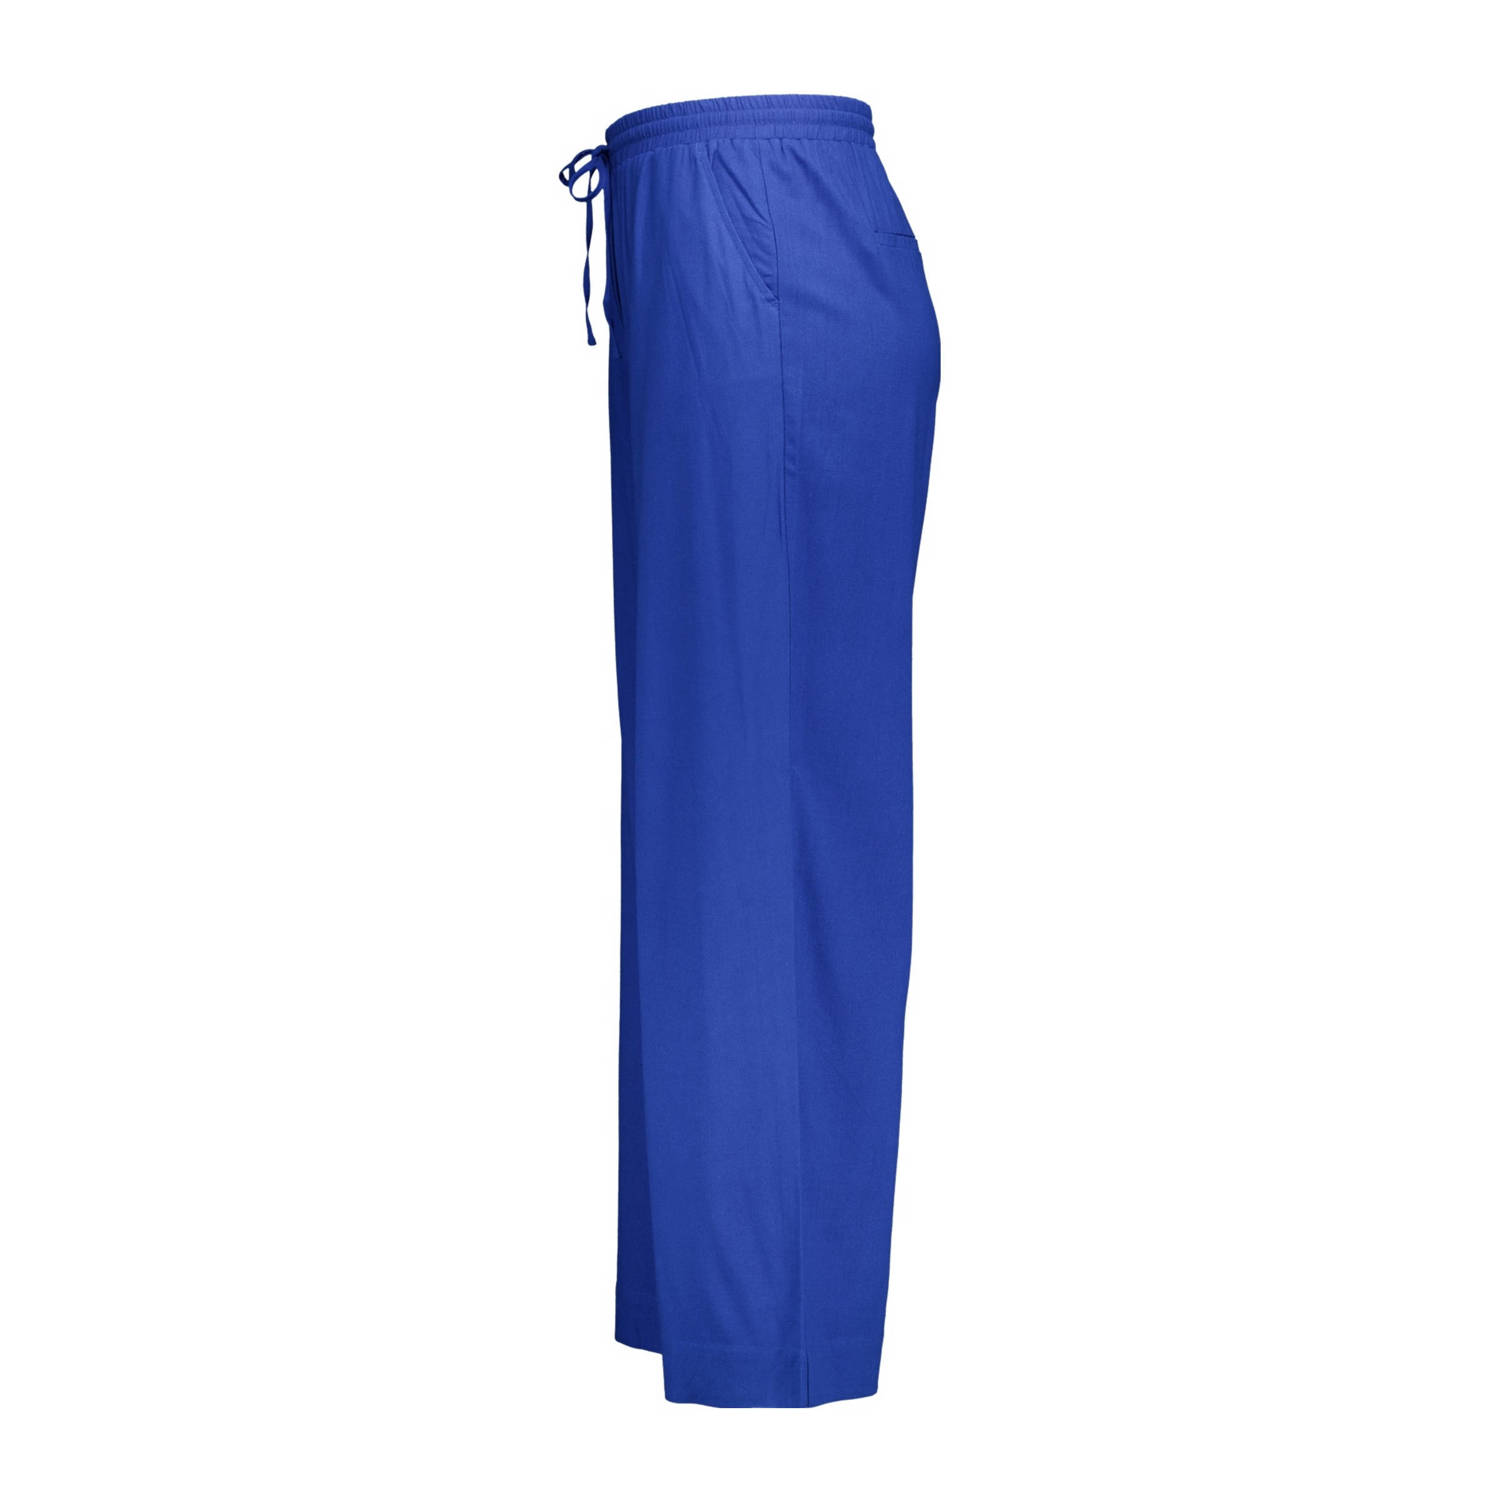 MS Mode high waist wide leg pantalon blauw